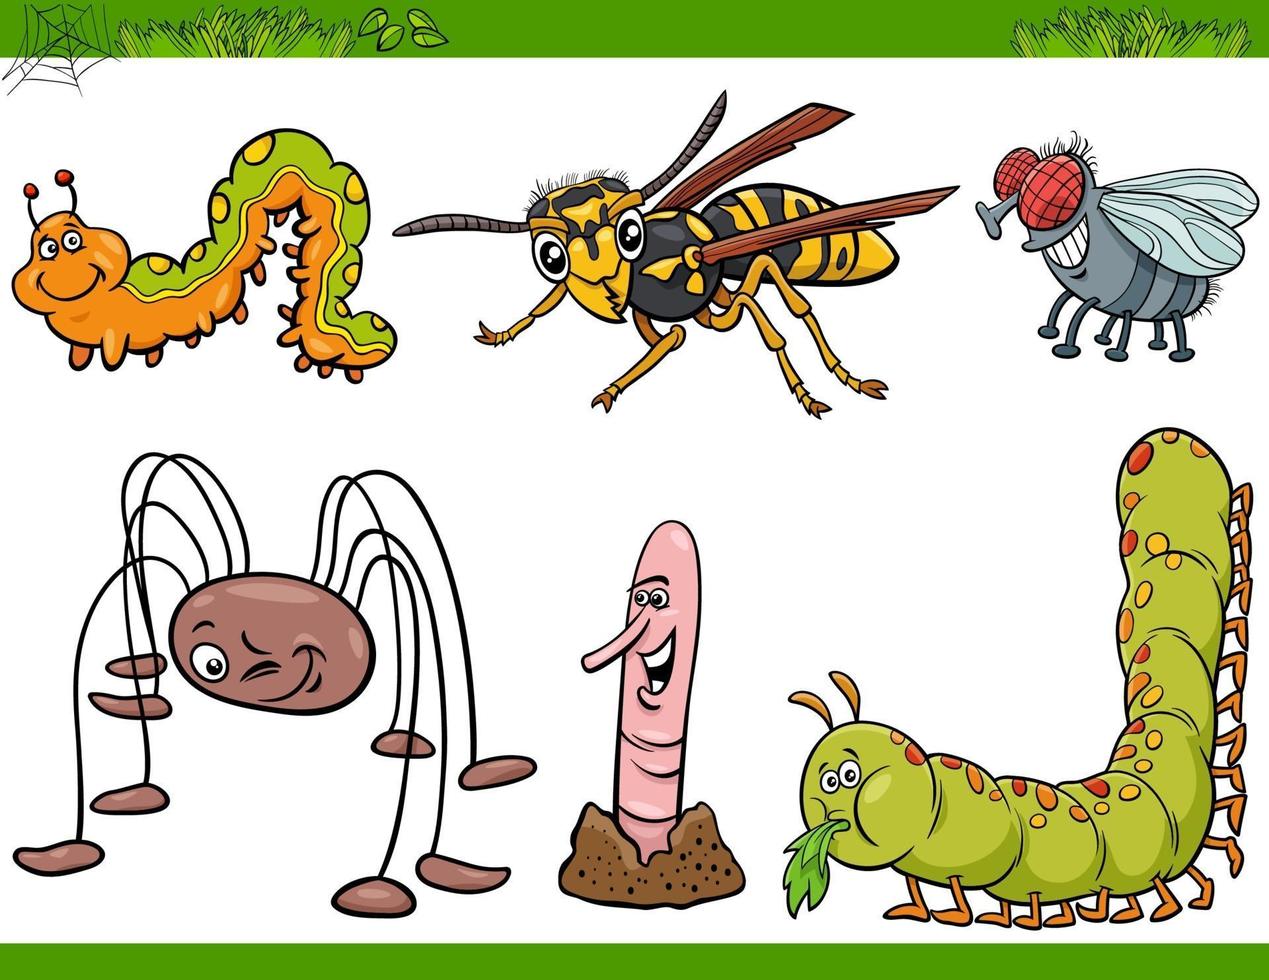 lustige insektencharaktere stellen karikaturillustration ein vektor